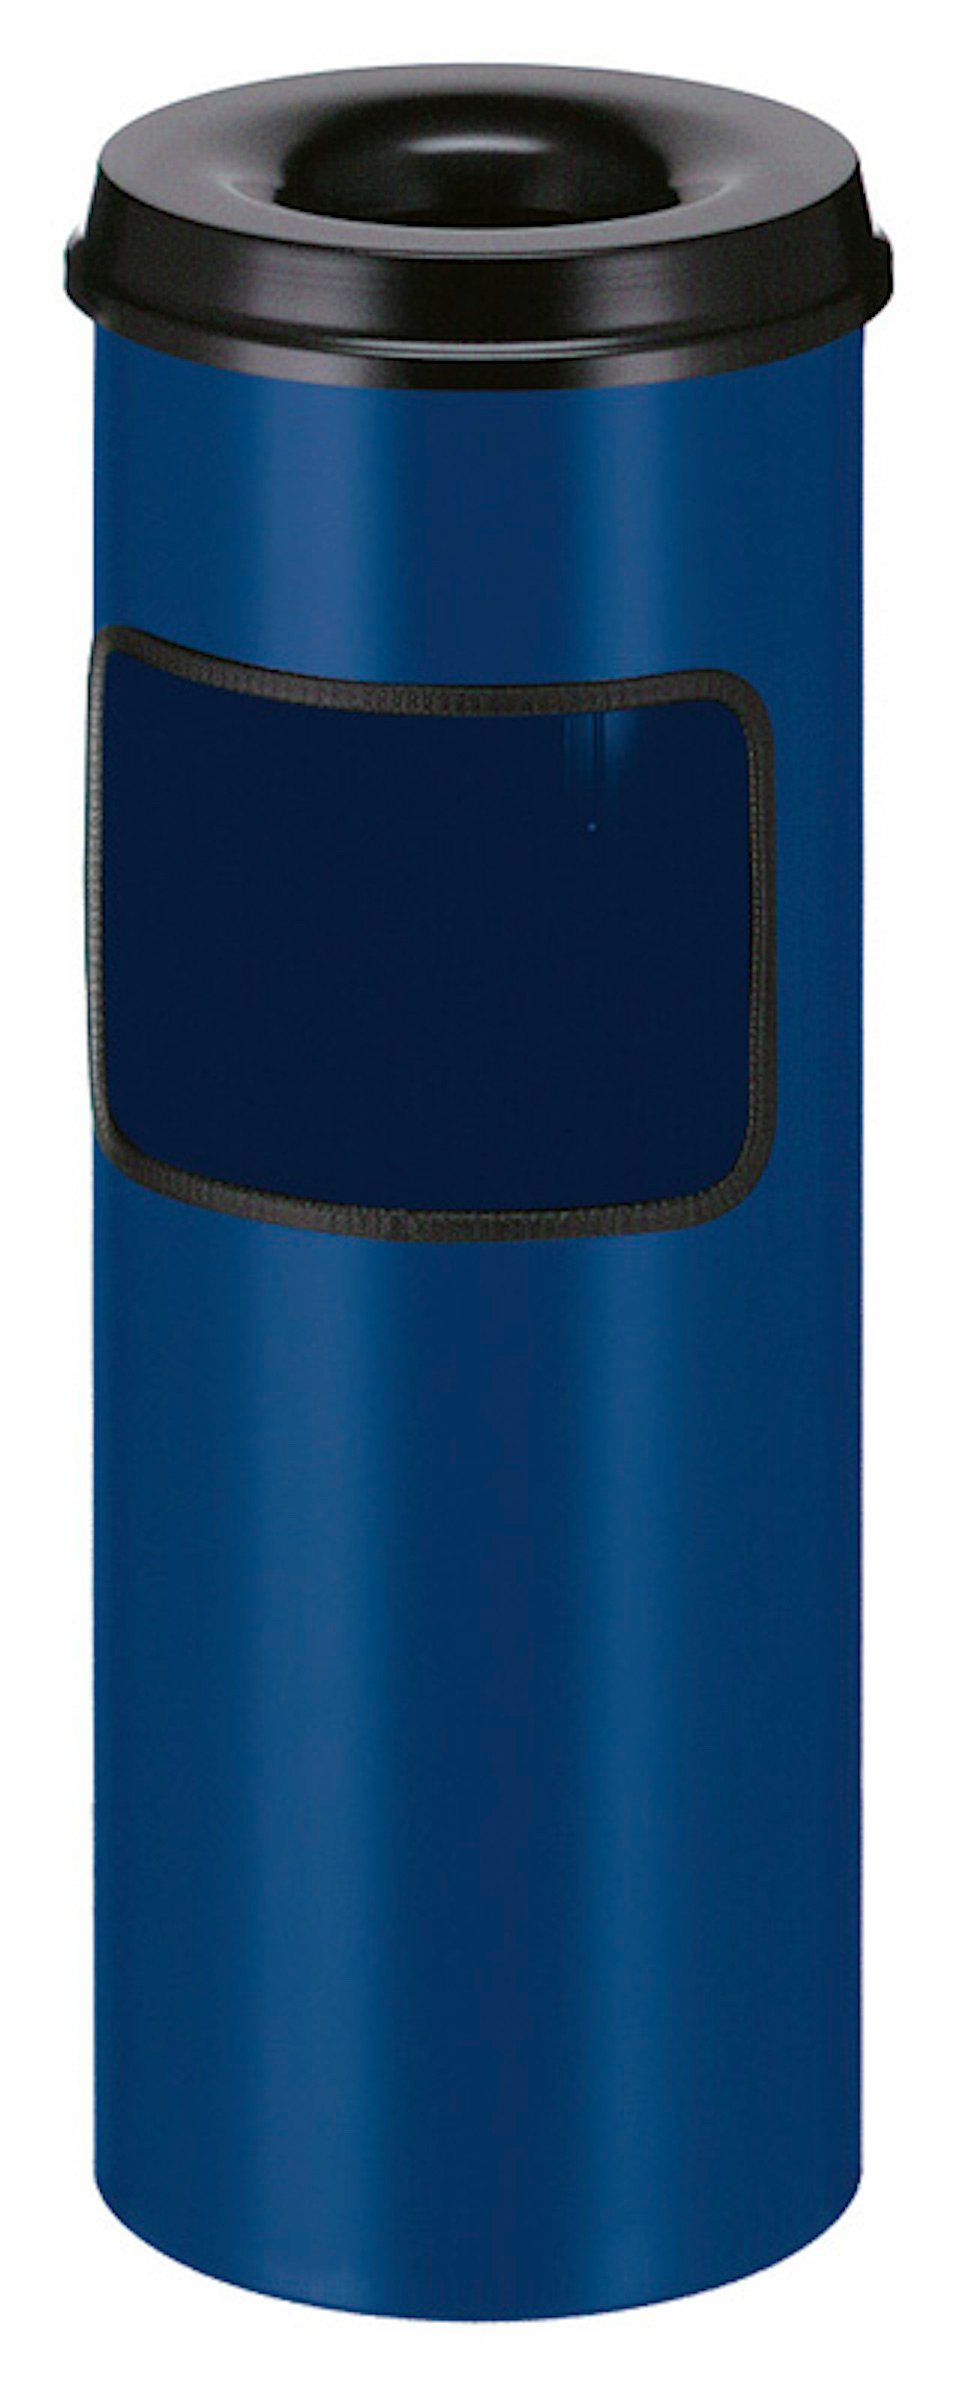 PROREGAL® Aschenbecher Runder Kombiascher feuerlöschendem mit Blau Oberteil, 30L, Silber